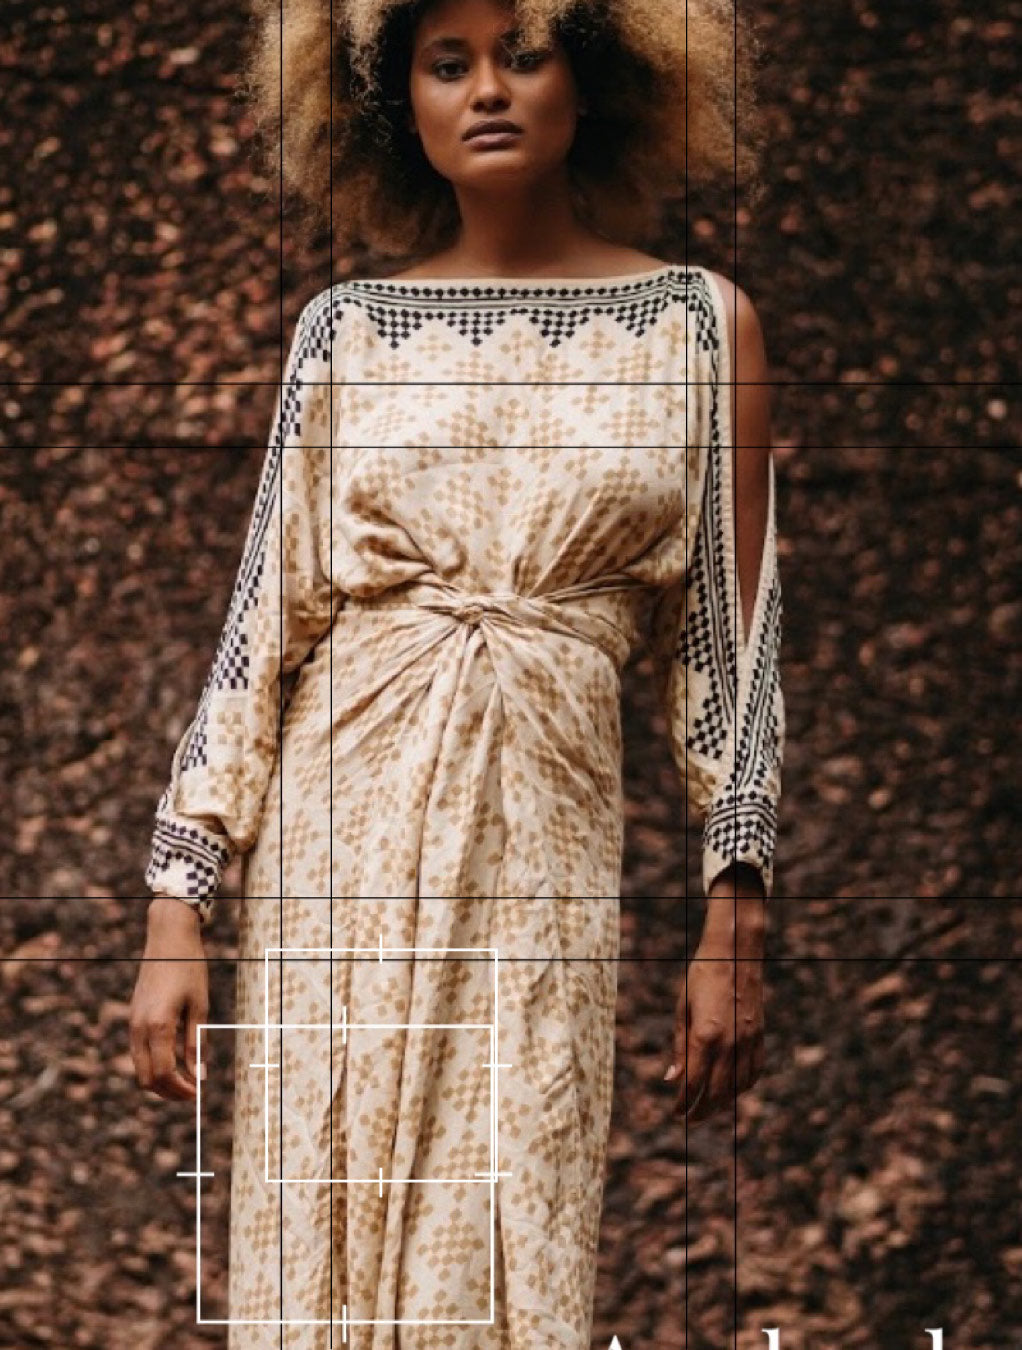 Anaka Dress by Alekai - Psylo Fashion